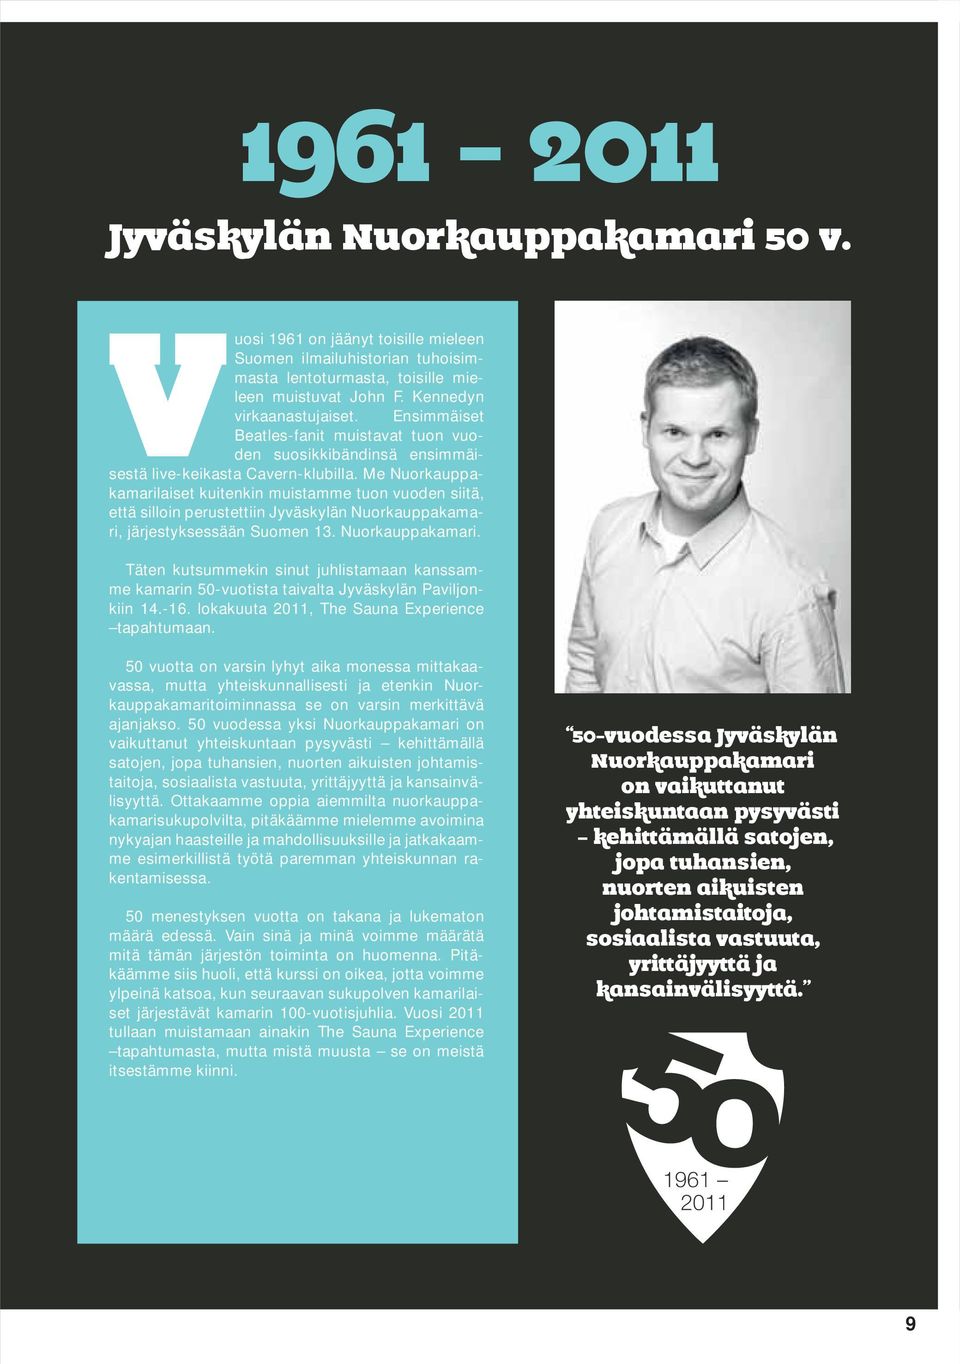 Me Nuorkauppakamarilaiset kuitenkin muistamme tuon vuoden siitä, että silloin perustettiin Jyväskylän Nuorkauppakamari, järjestyksessään Suomen 13. Nuorkauppakamari. Täten kutsummekin sinut juhlistamaan kanssamme kamarin 50-vuotista taivalta Jyväskylän Paviljonkiin 14.